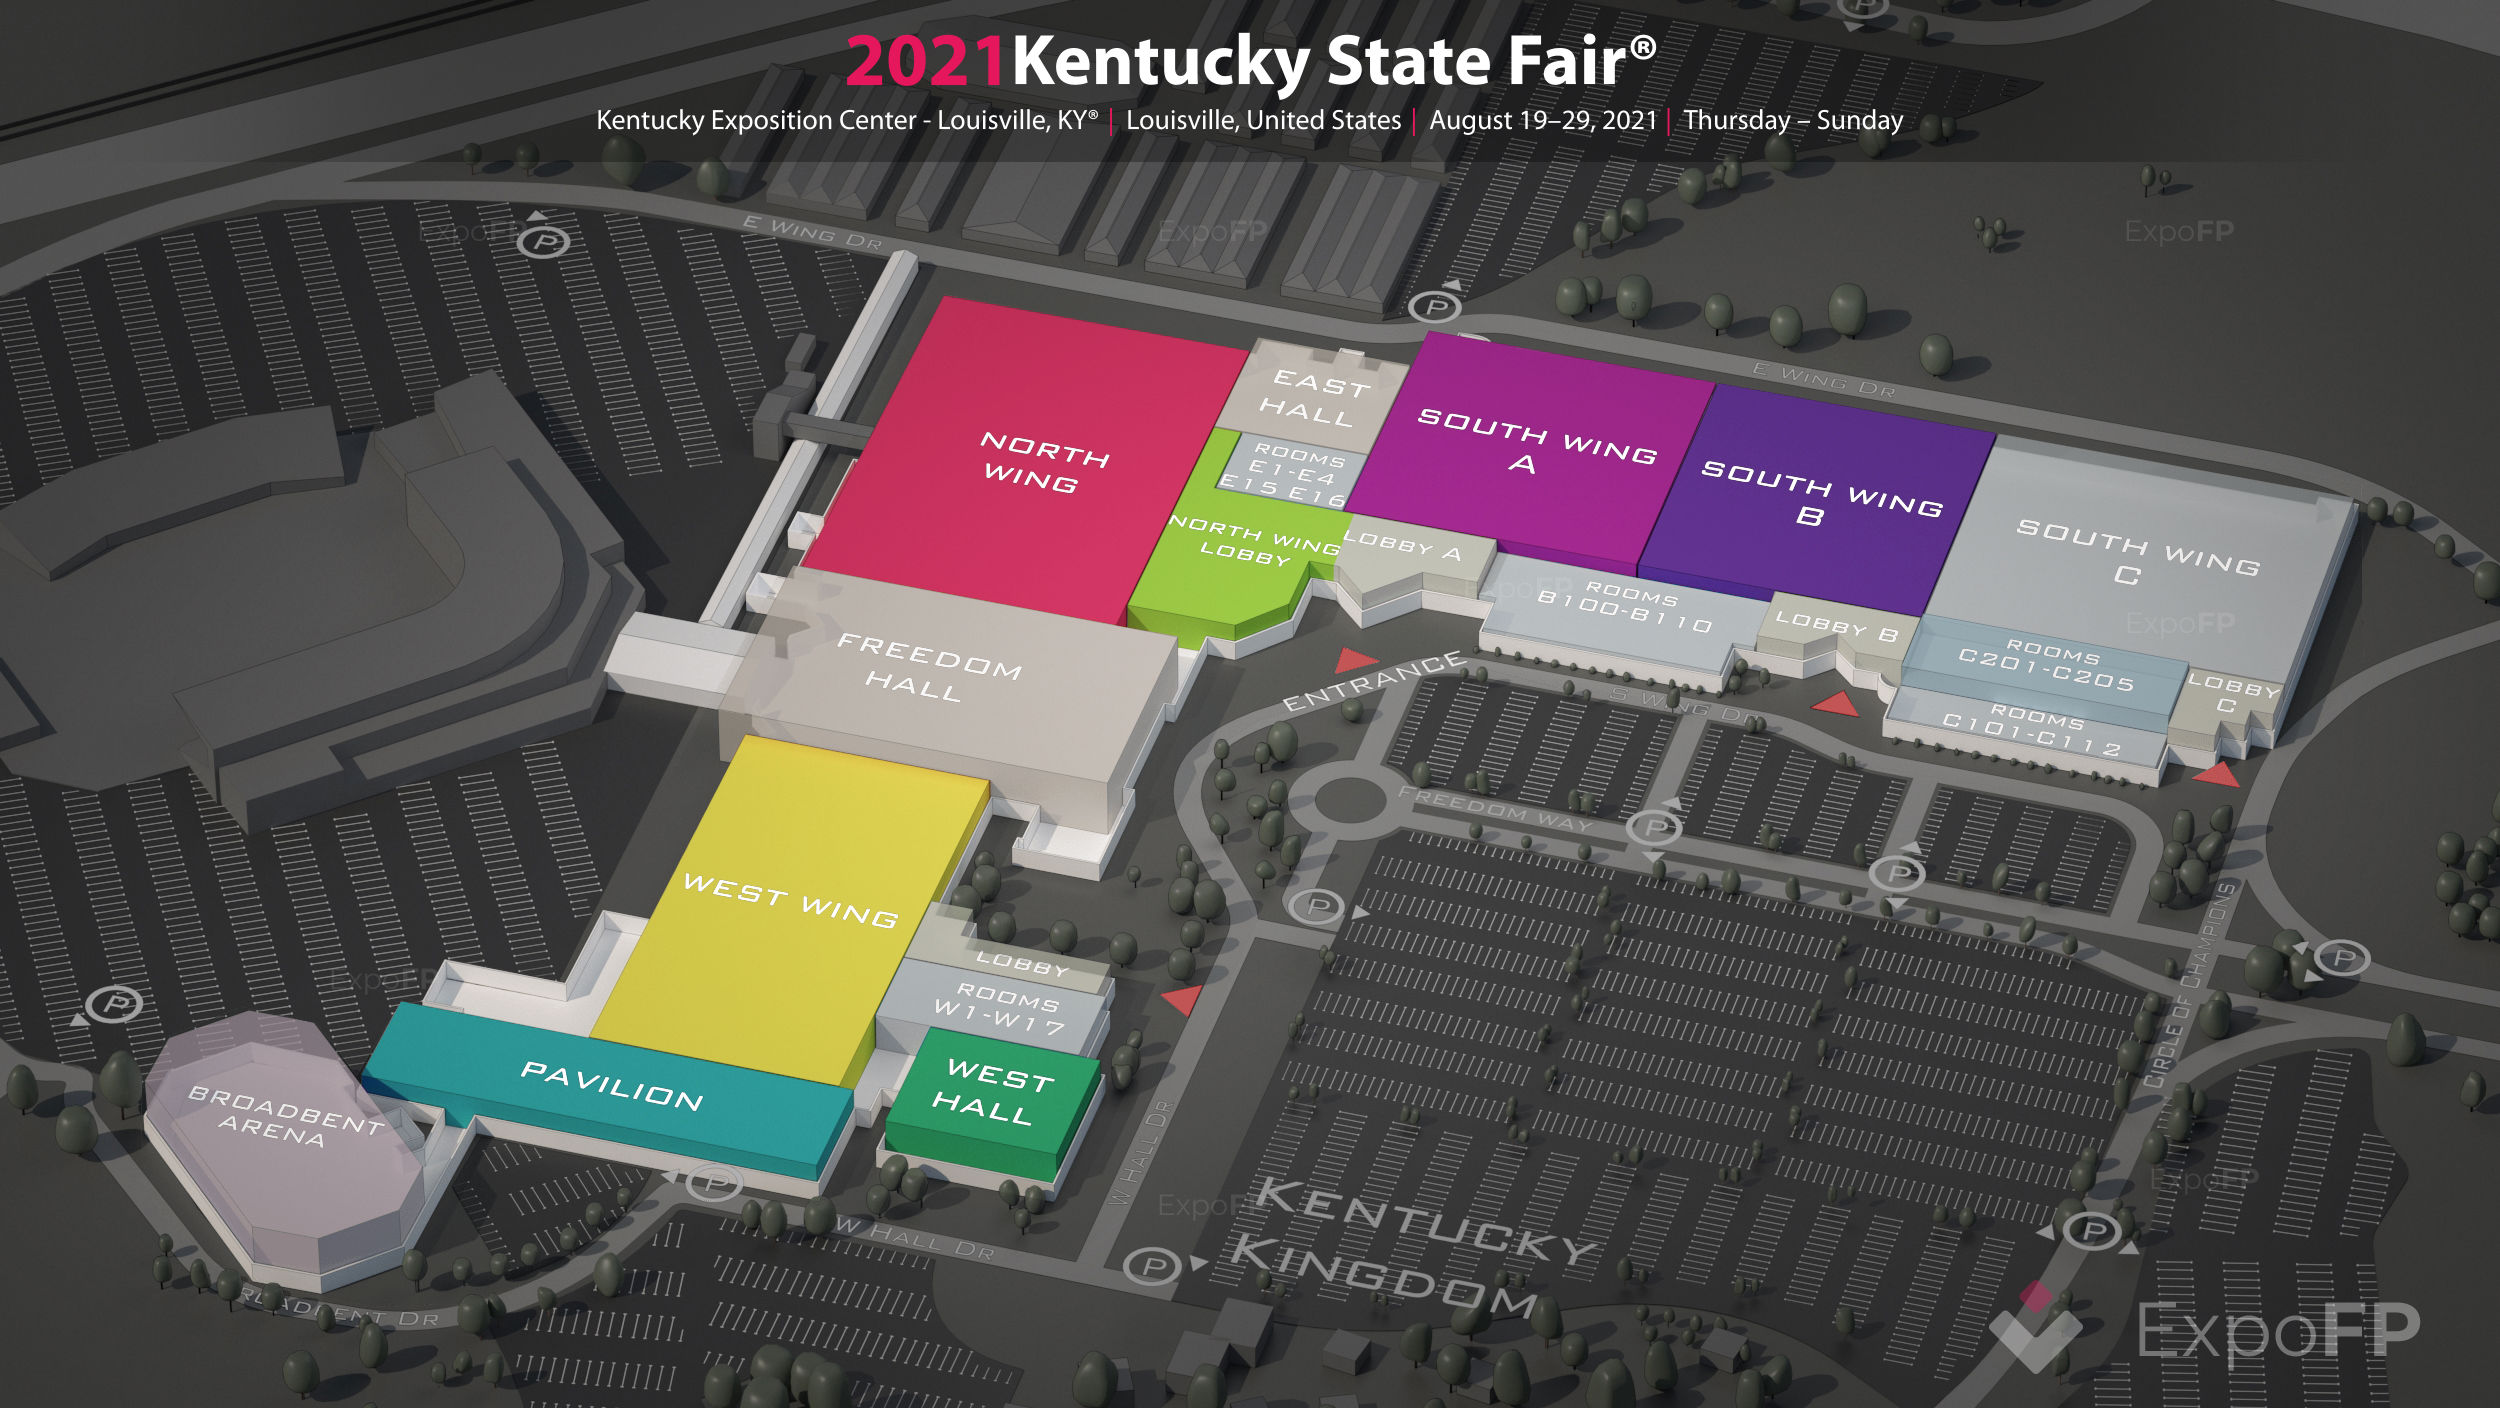 Ky State Fair 2022 Schedule Kentucky State Fair 2021 In Kentucky Exposition Center - Louisville, Ky